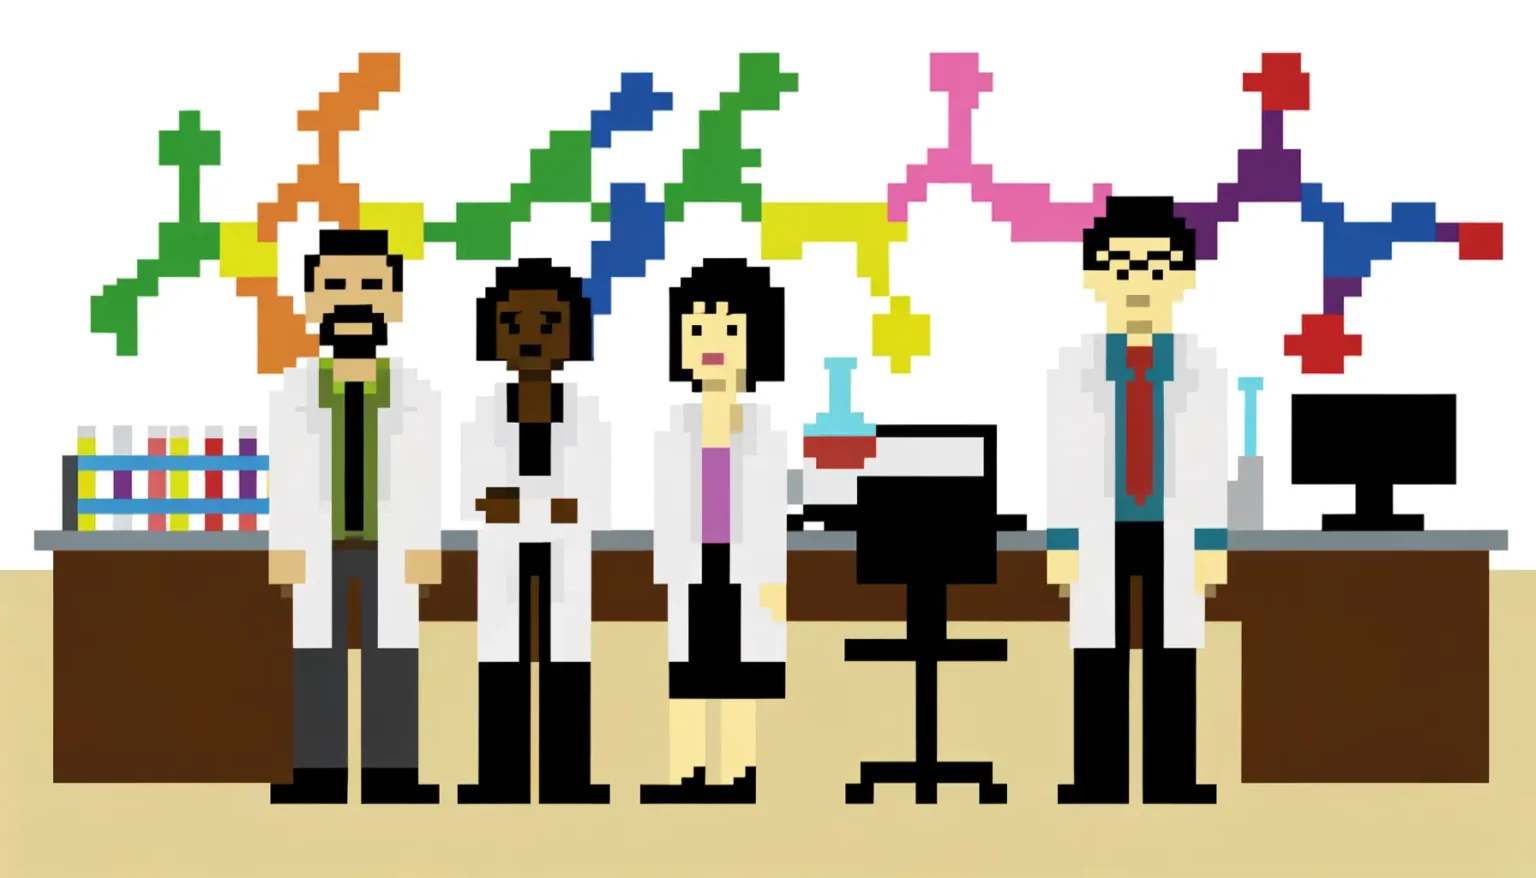 Pixelart-Darstellung von vier Wissenschaftlern in einem Labor mit Reagenzgläsern auf einer Bank, einem Erlenmeyerkolben, Bürostühlen und einem Computer auf Schreibtischen. Im Hintergrund sind abstrakte, farbenfrohe Grafiken, die möglicherweise Moleküle oder statistische Daten repräsentieren.